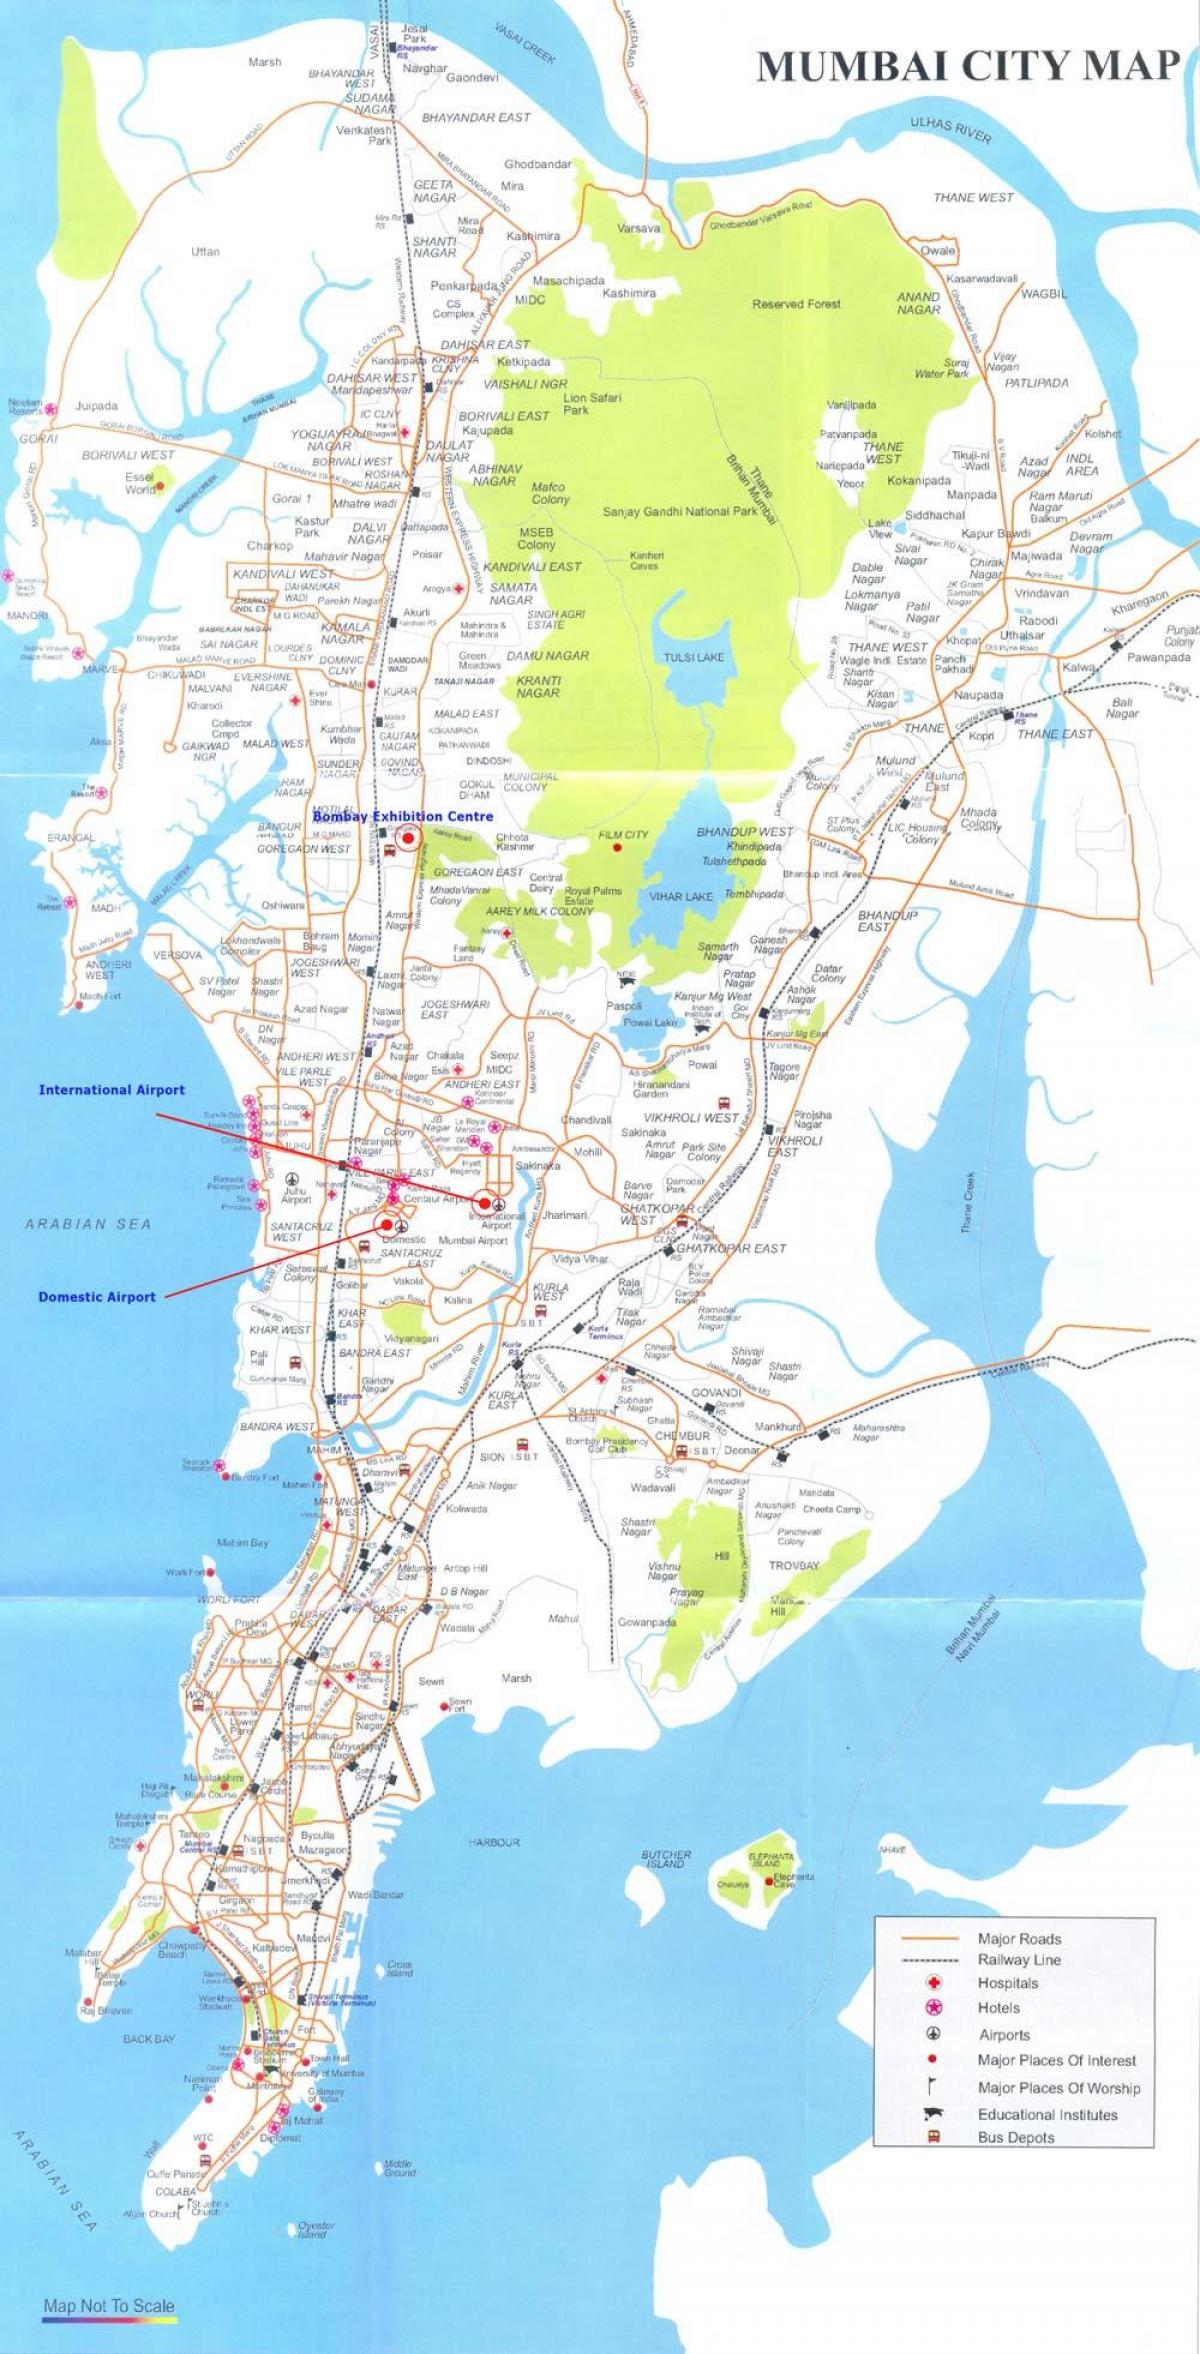 મુંબઇ બોરિવલી નકશો